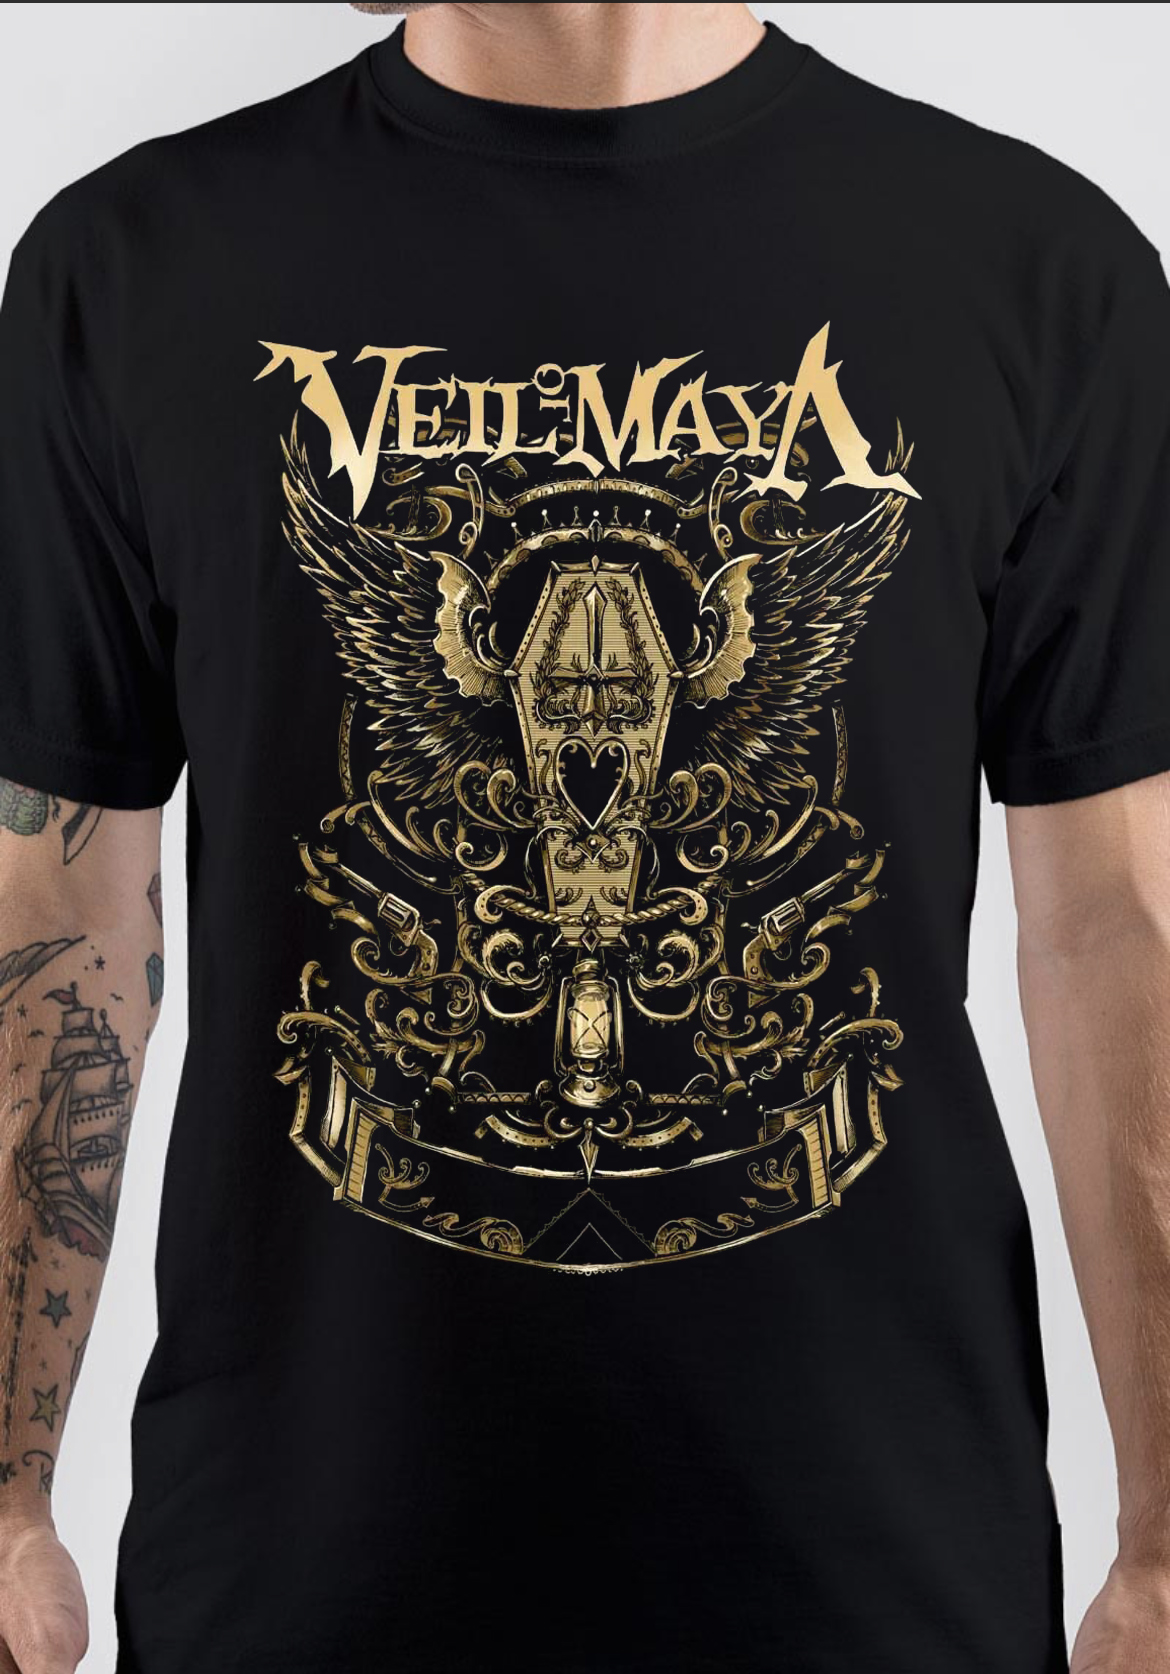 Veil Of Maya T-Shirt And Merchandise